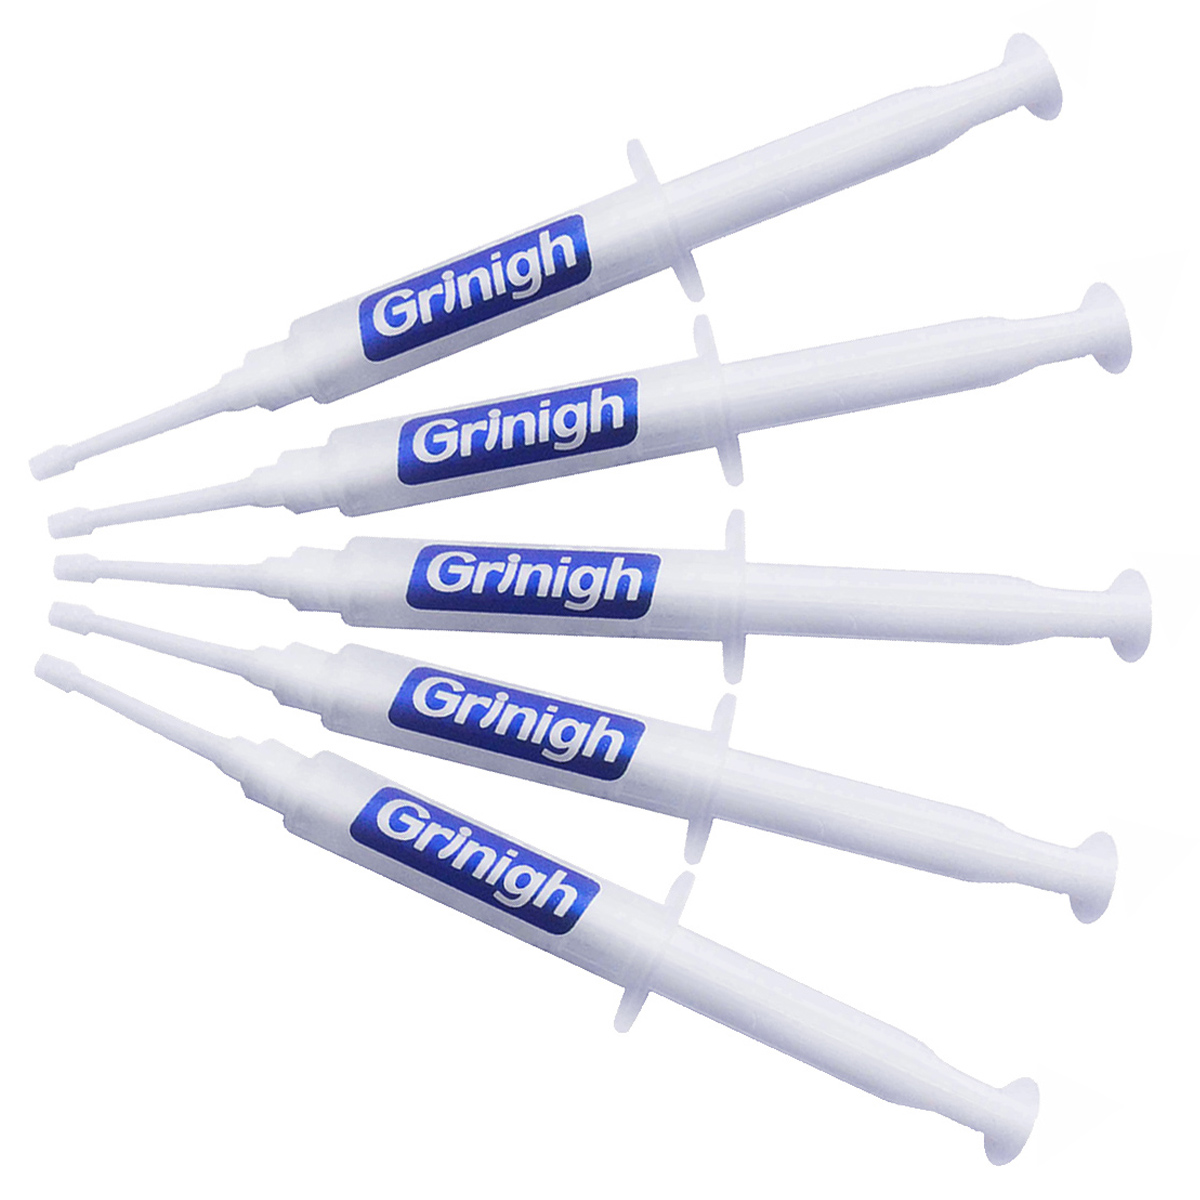 Grin365 Hjem Tænder Whitening Gel med Genanvendelig sprøjte Tips - Refill til Kit med 33 Behandlinger af Klinisk Regular Strength Gel(44% carbamidperoxid)